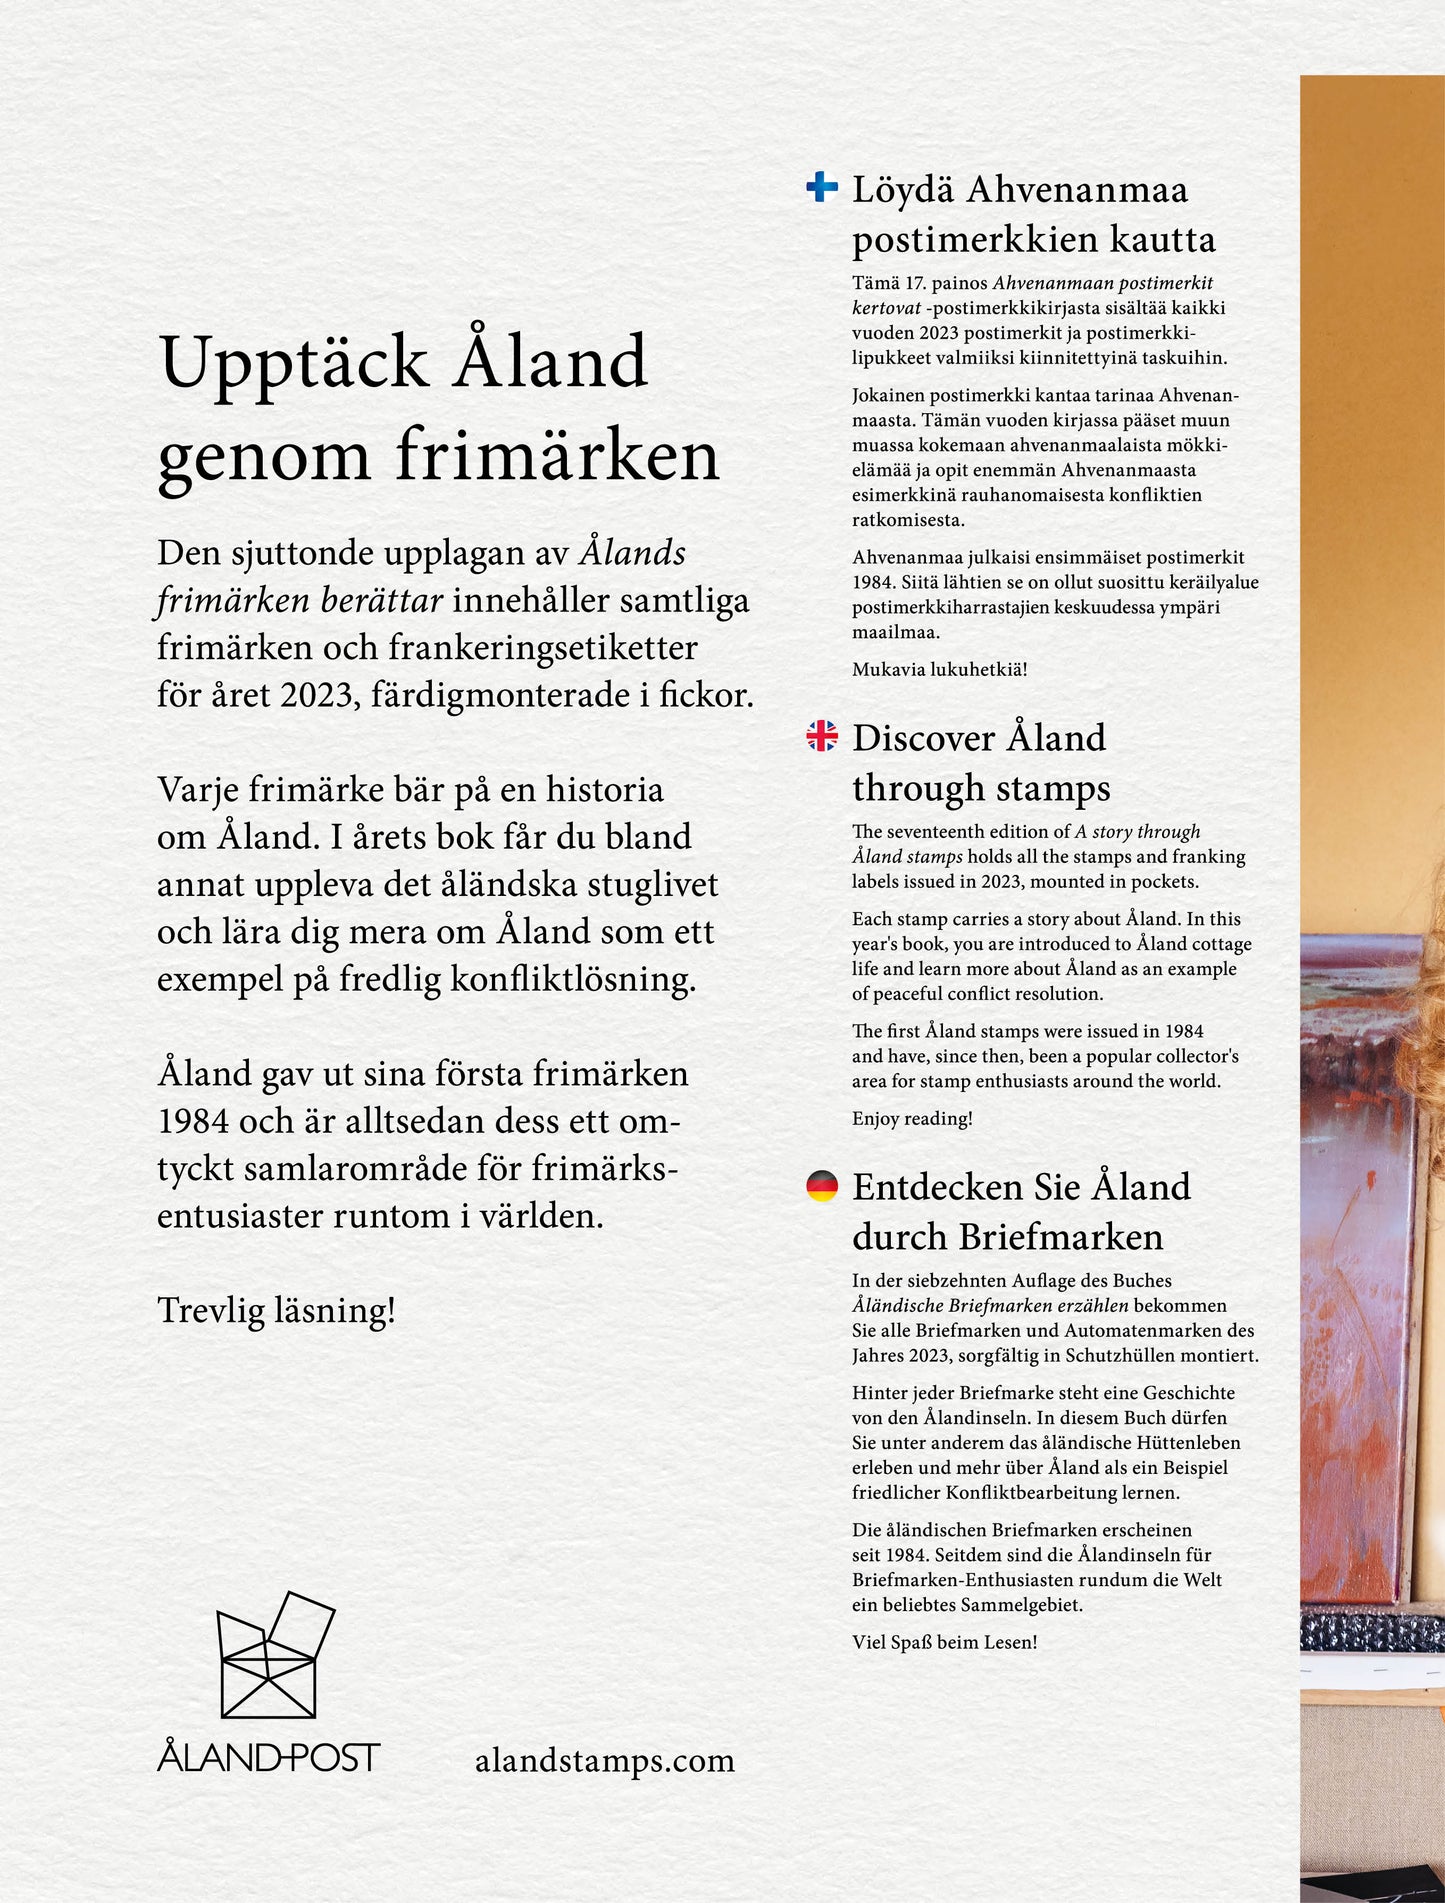 Årsbok, ”Ålands frimärken berättar 2023”